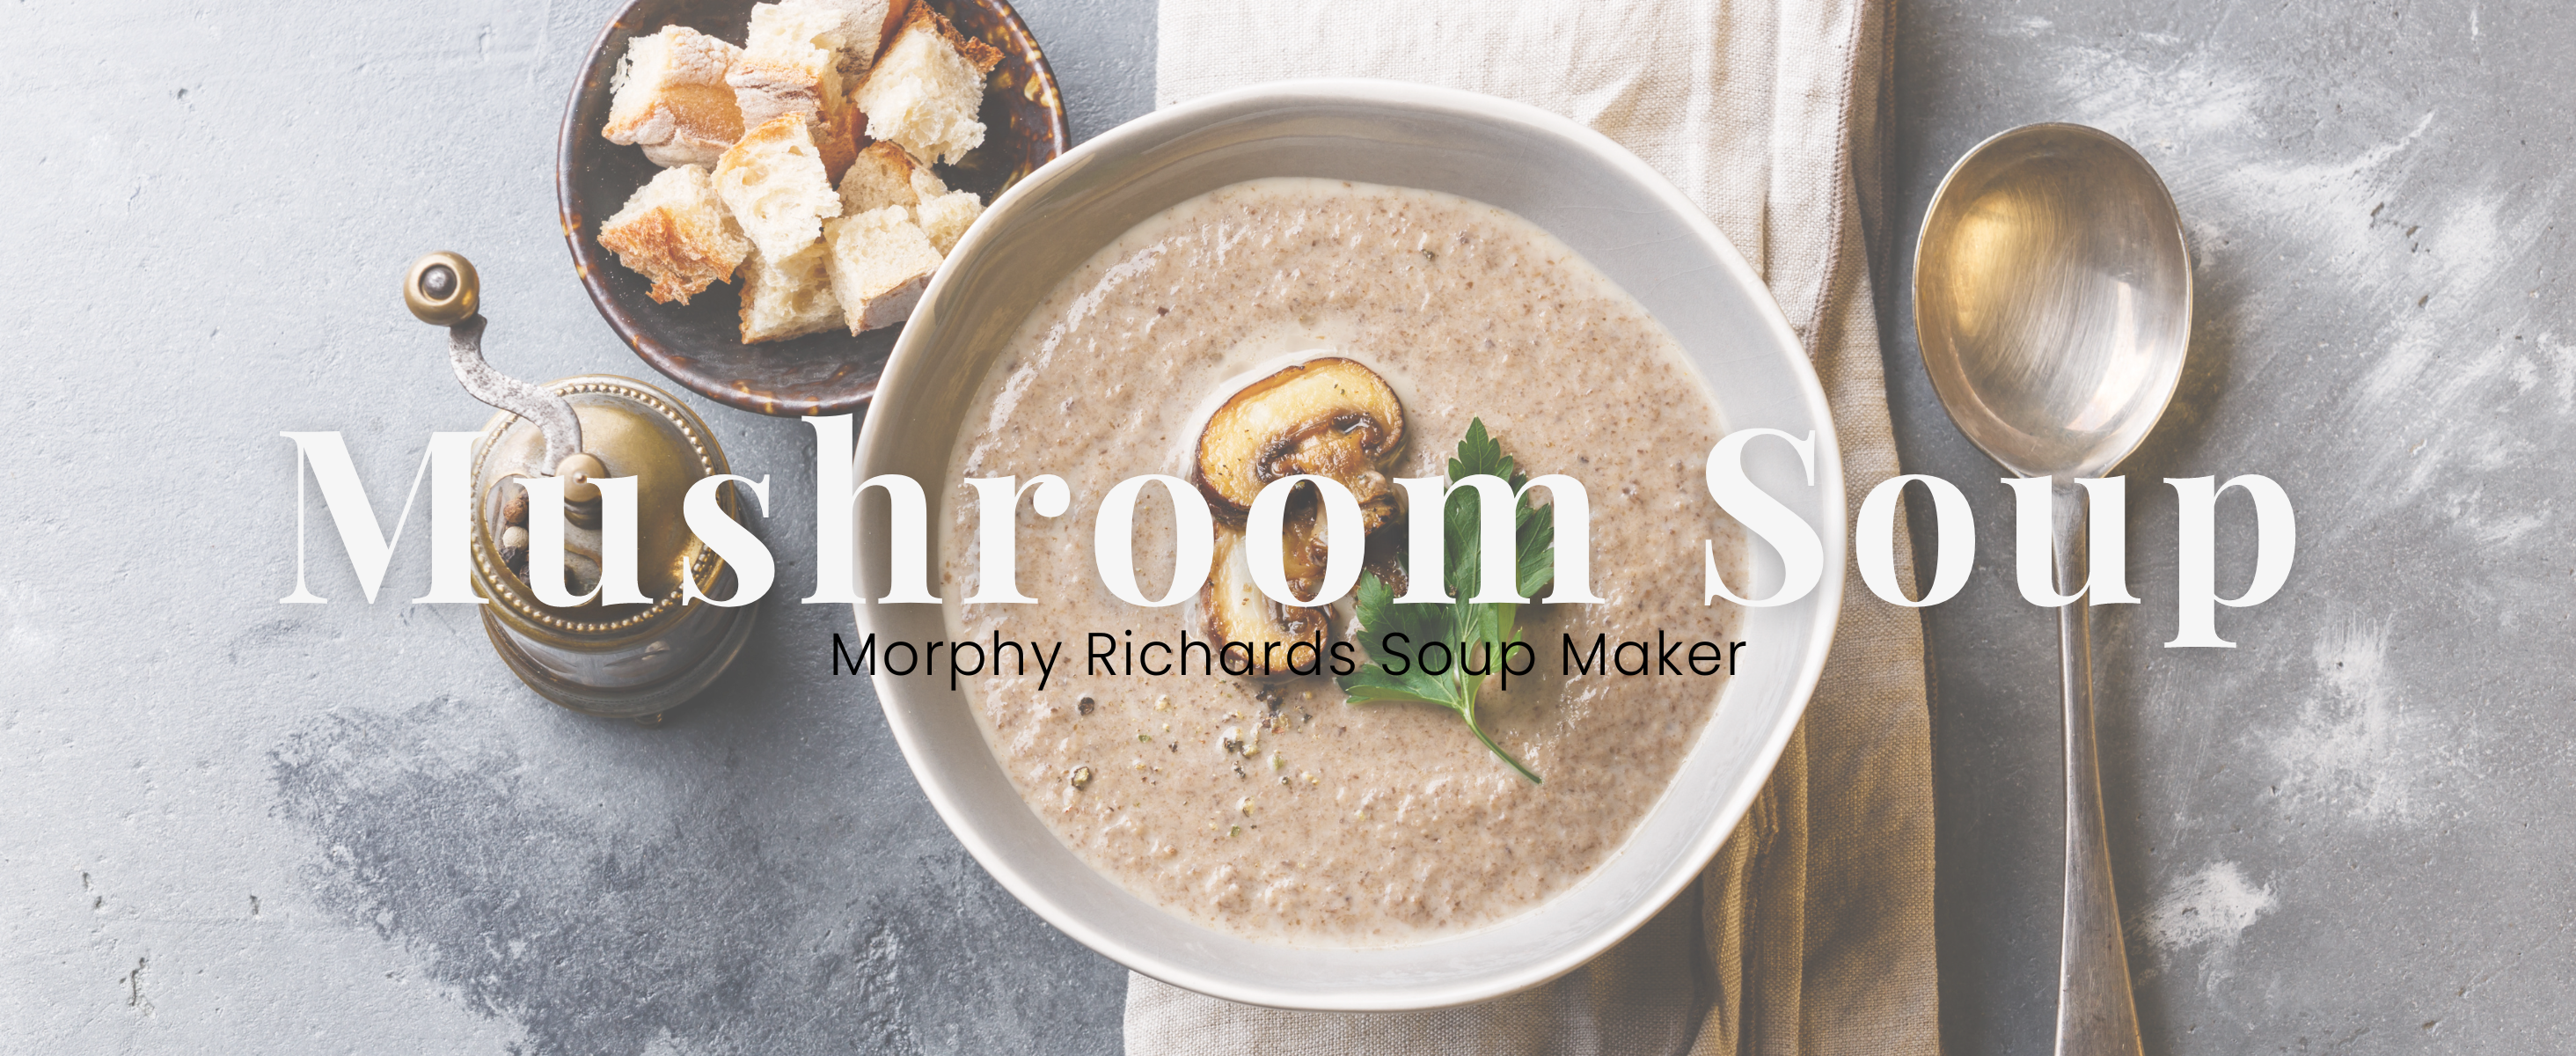 Delectable Soup Maker Mushroom Soup